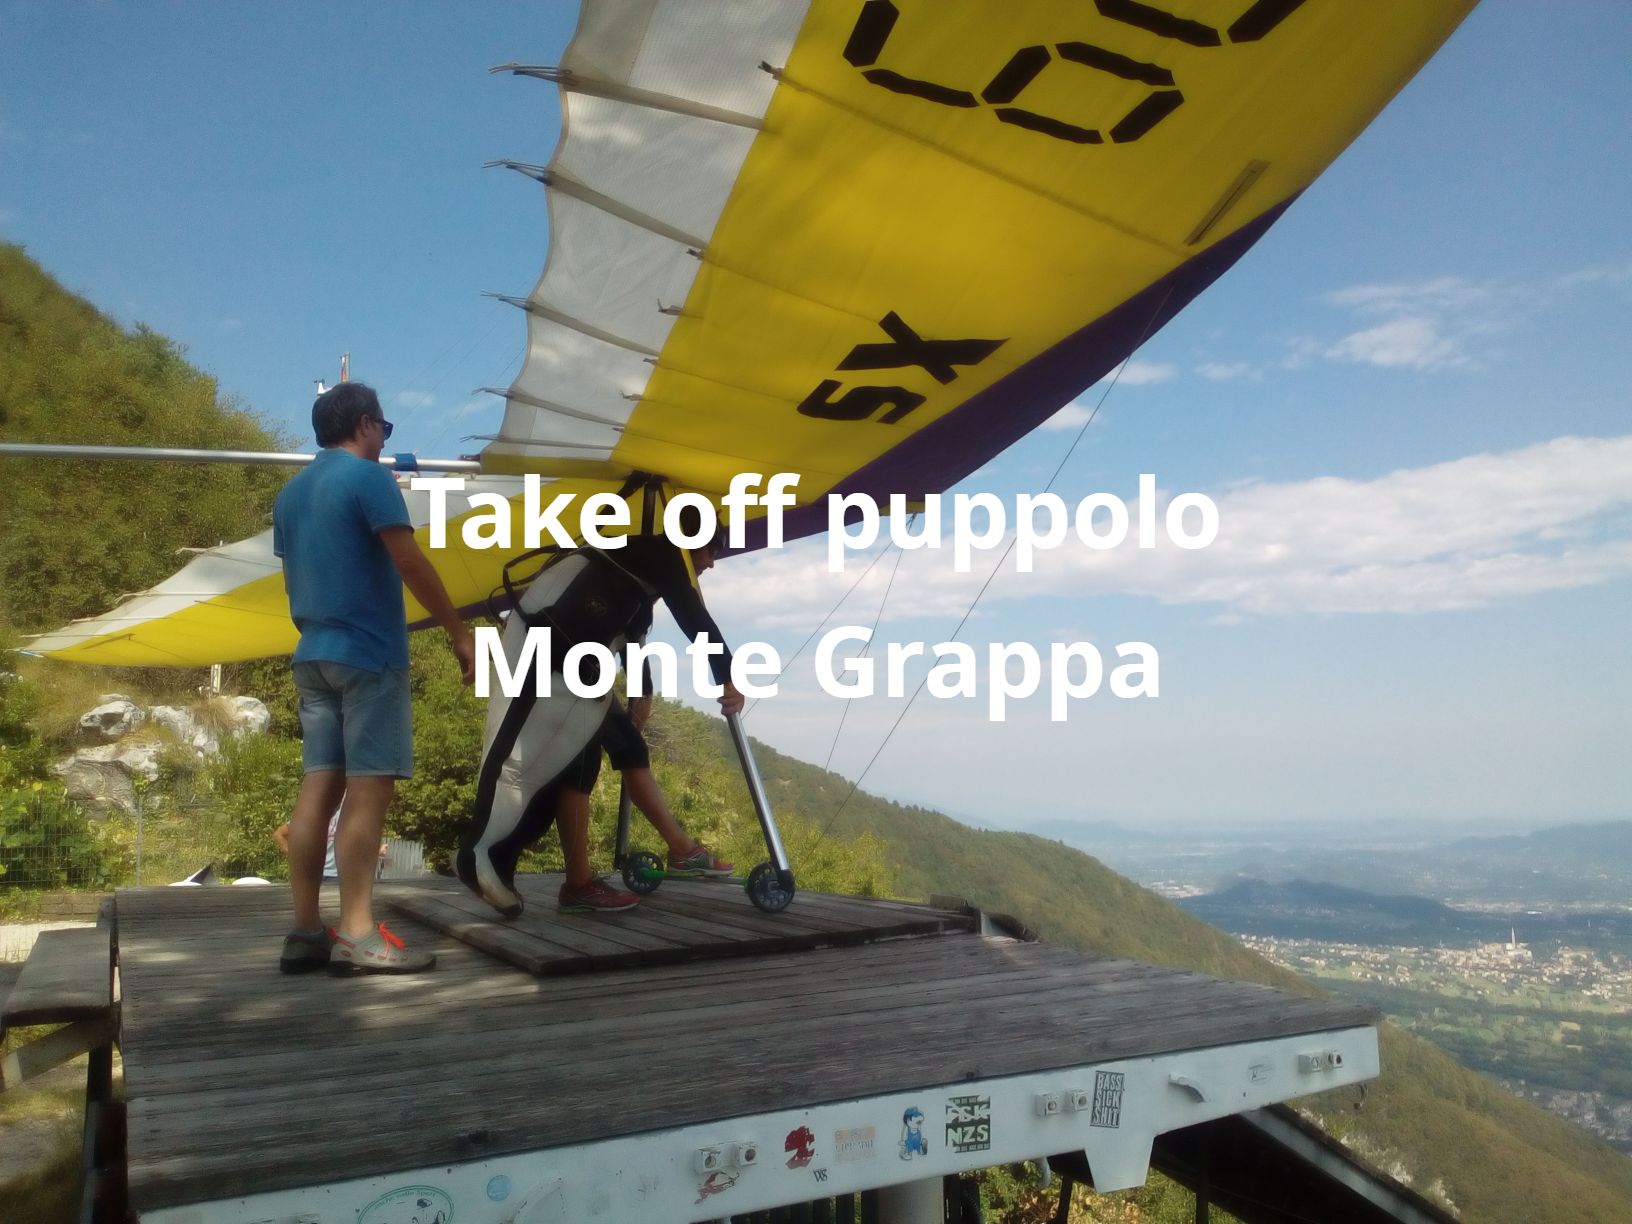 take off puppolo Monte Grappa